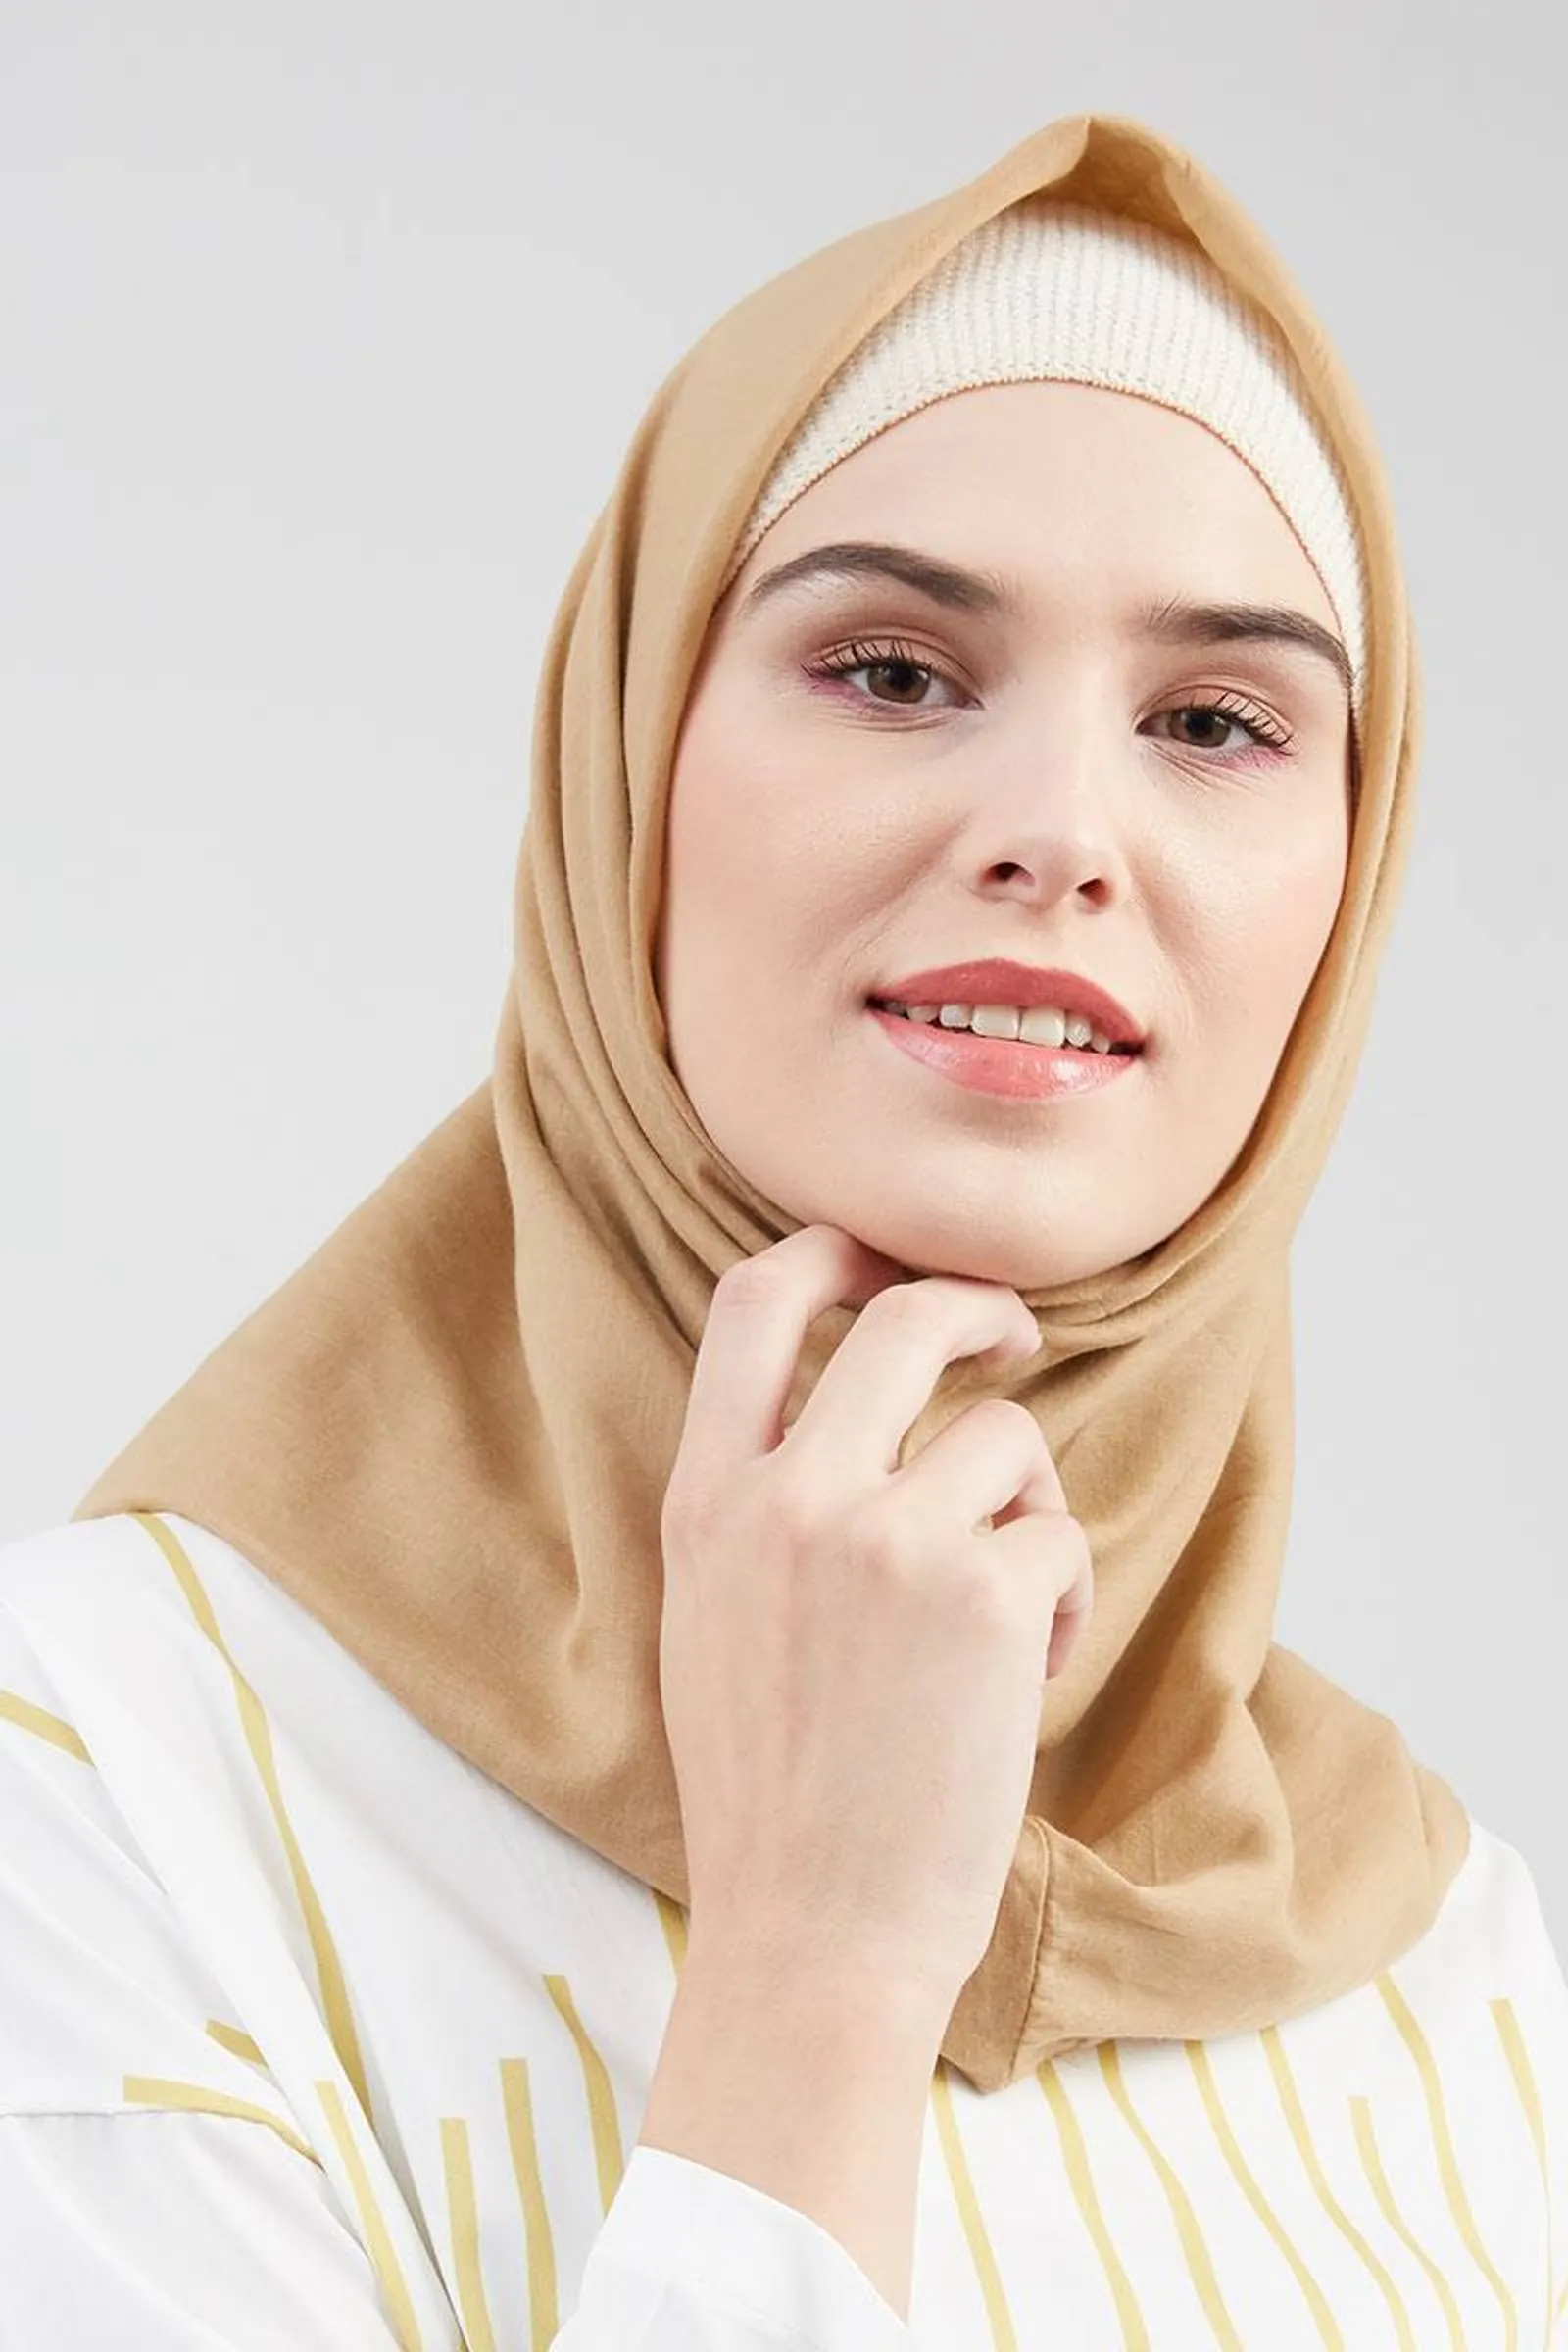 Lebih Praktis, Intip Tips Memilih Hijab Instan yang Bagus dan Nyaman